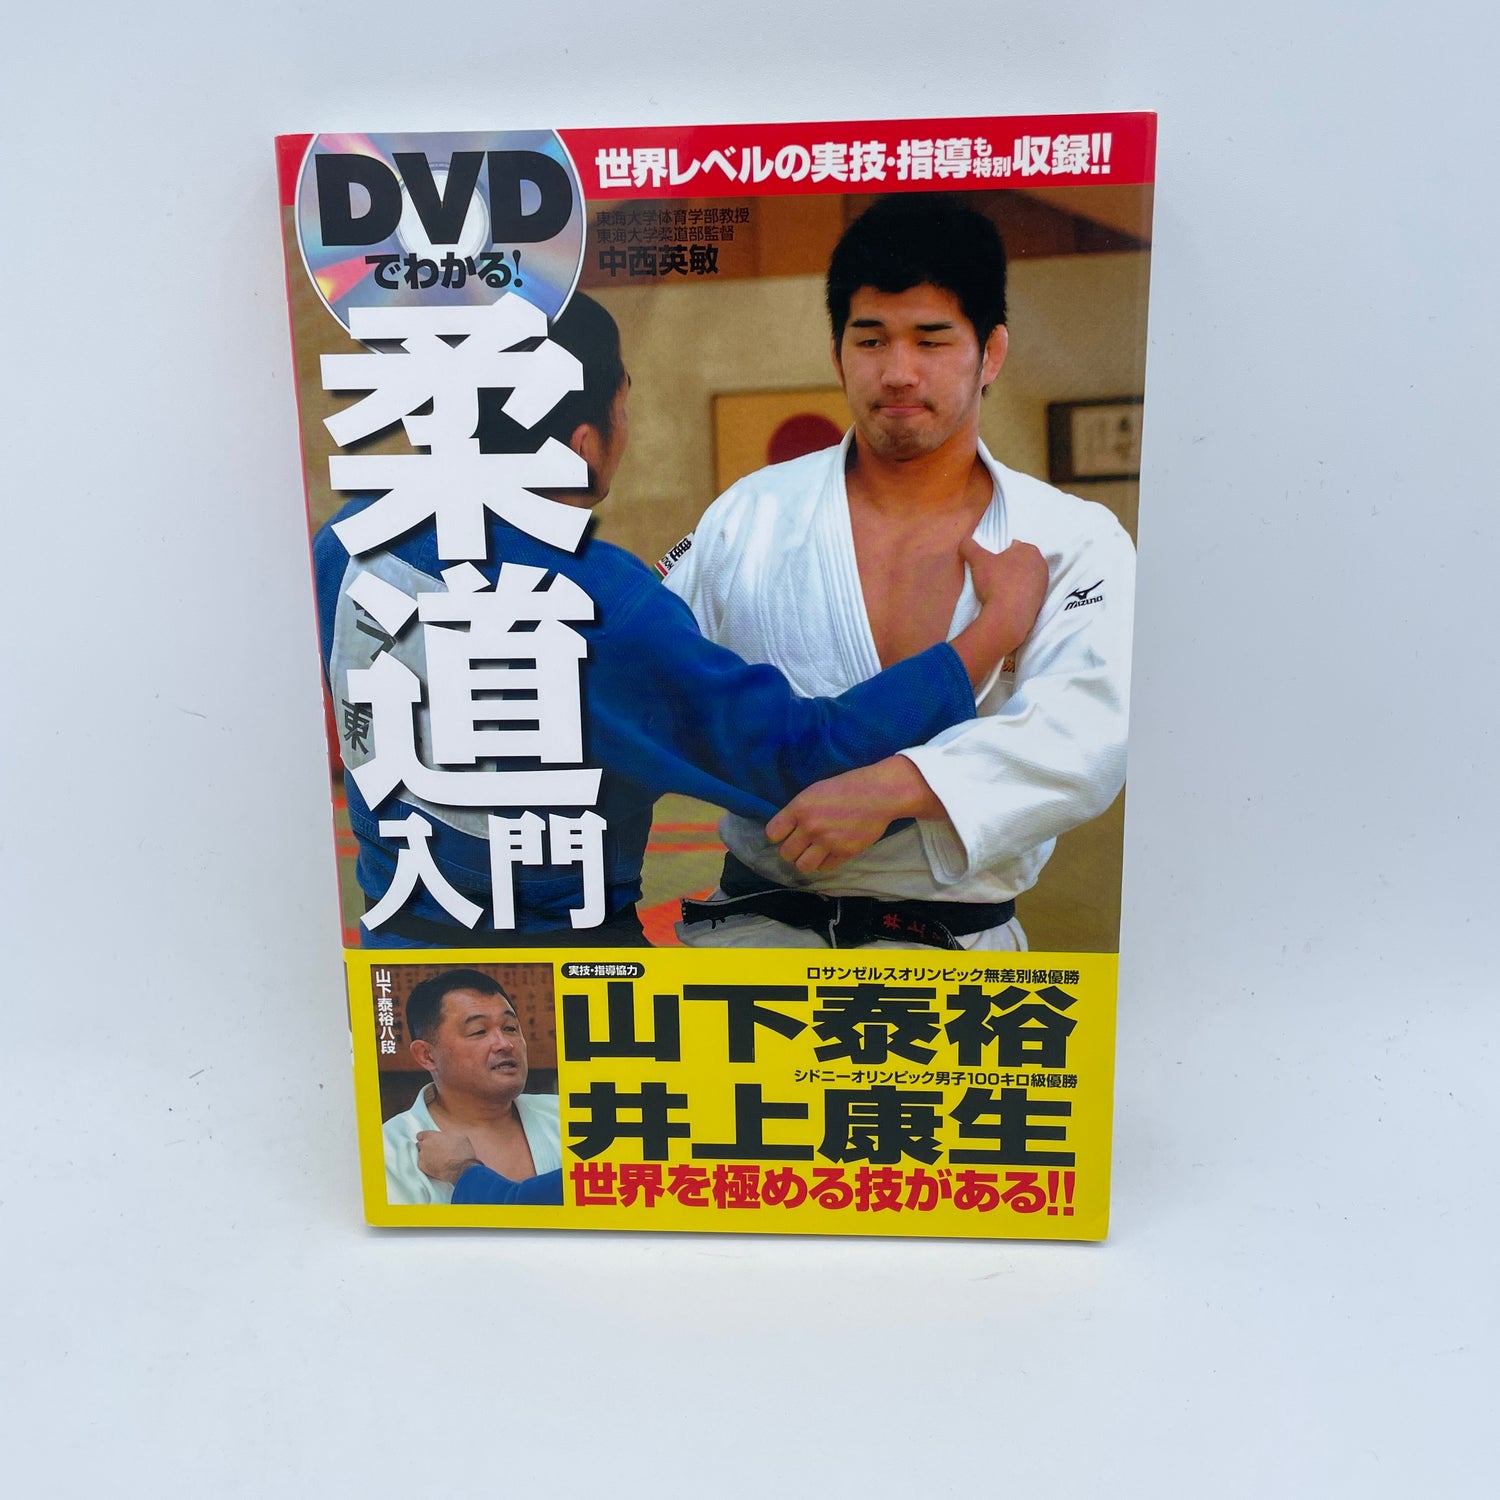 Introducción al libro y DVD de judo de Hidetoshi Nakanishi (usado) 